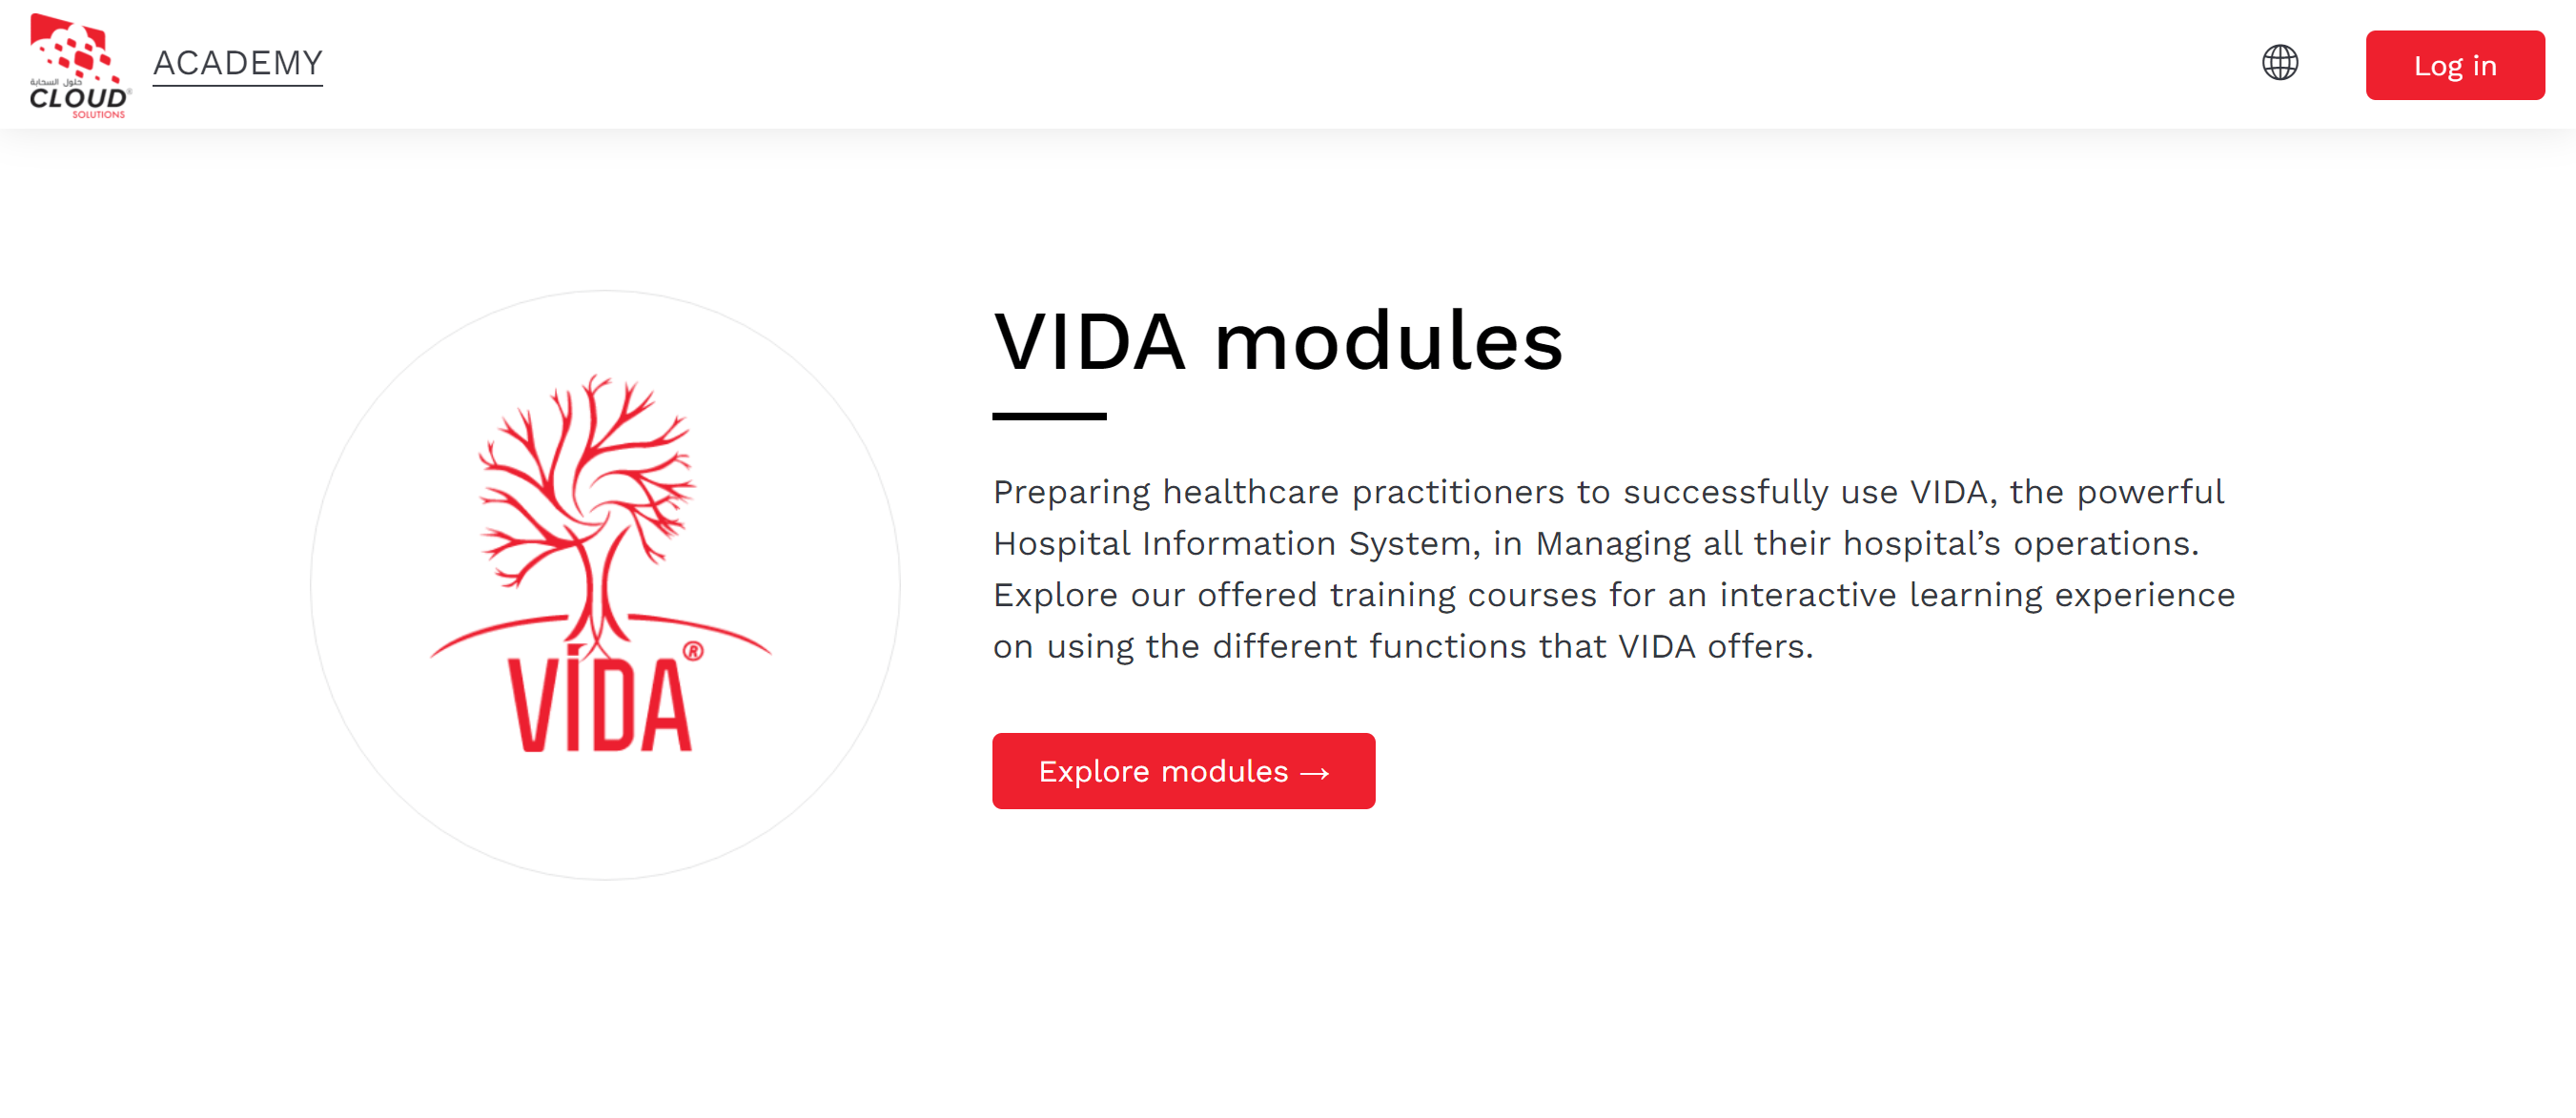 L'écran d'introduction aux modules VIDA de Cloud Solutions Academy, qui explique en quoi consistent les modules et comporte un bouton d'appel à l'action indiquant Explorer les modules